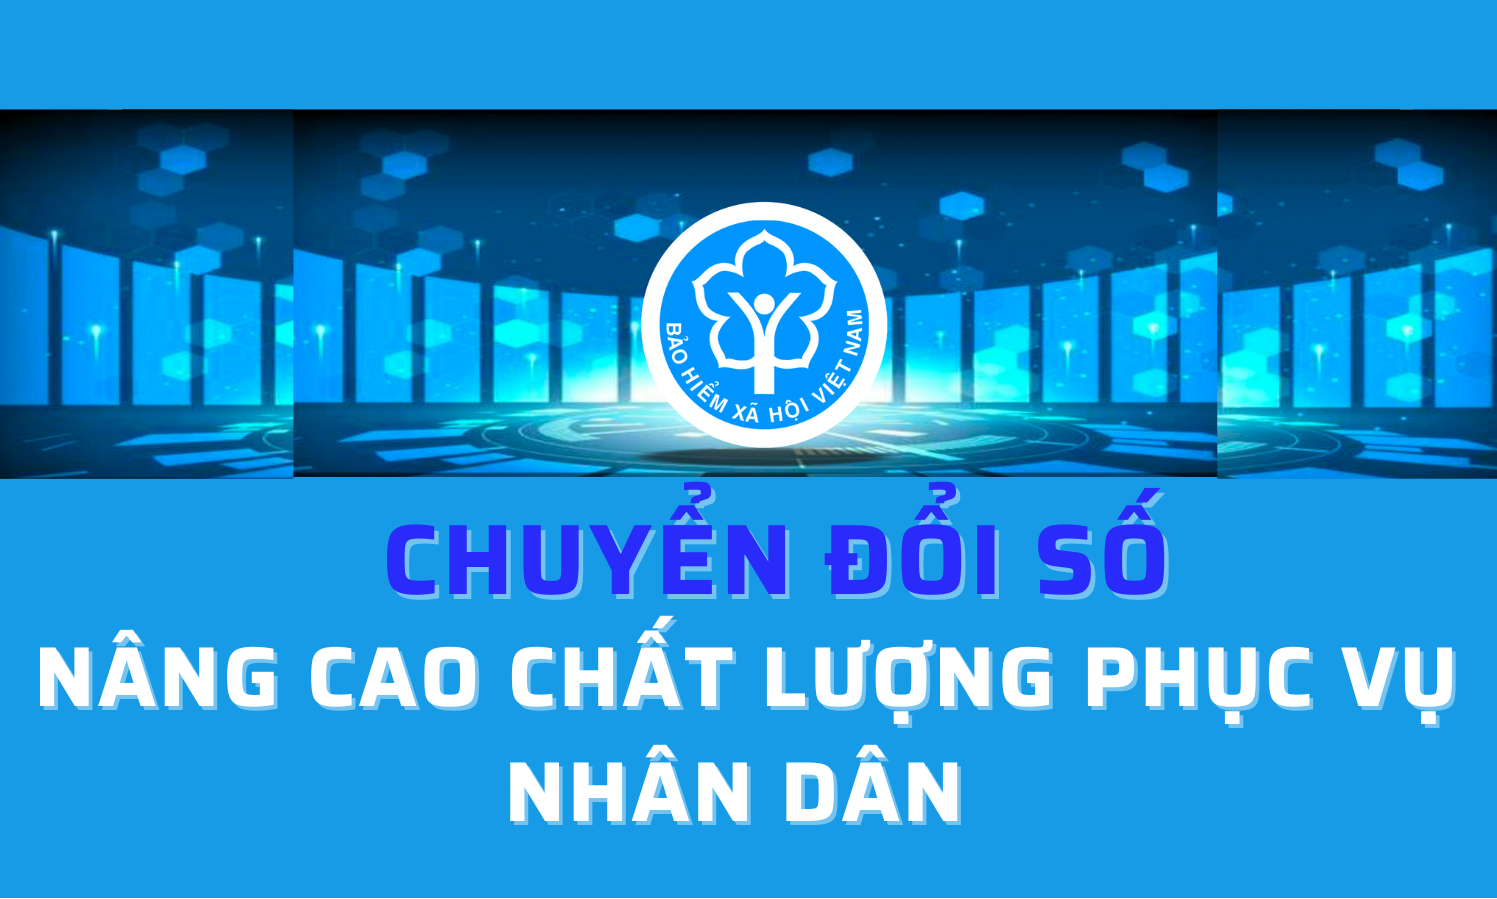 Chuyển đổi số ngành BHXH Việt Nam:
Nâng cao chất lượng phục vụ Nhân dân